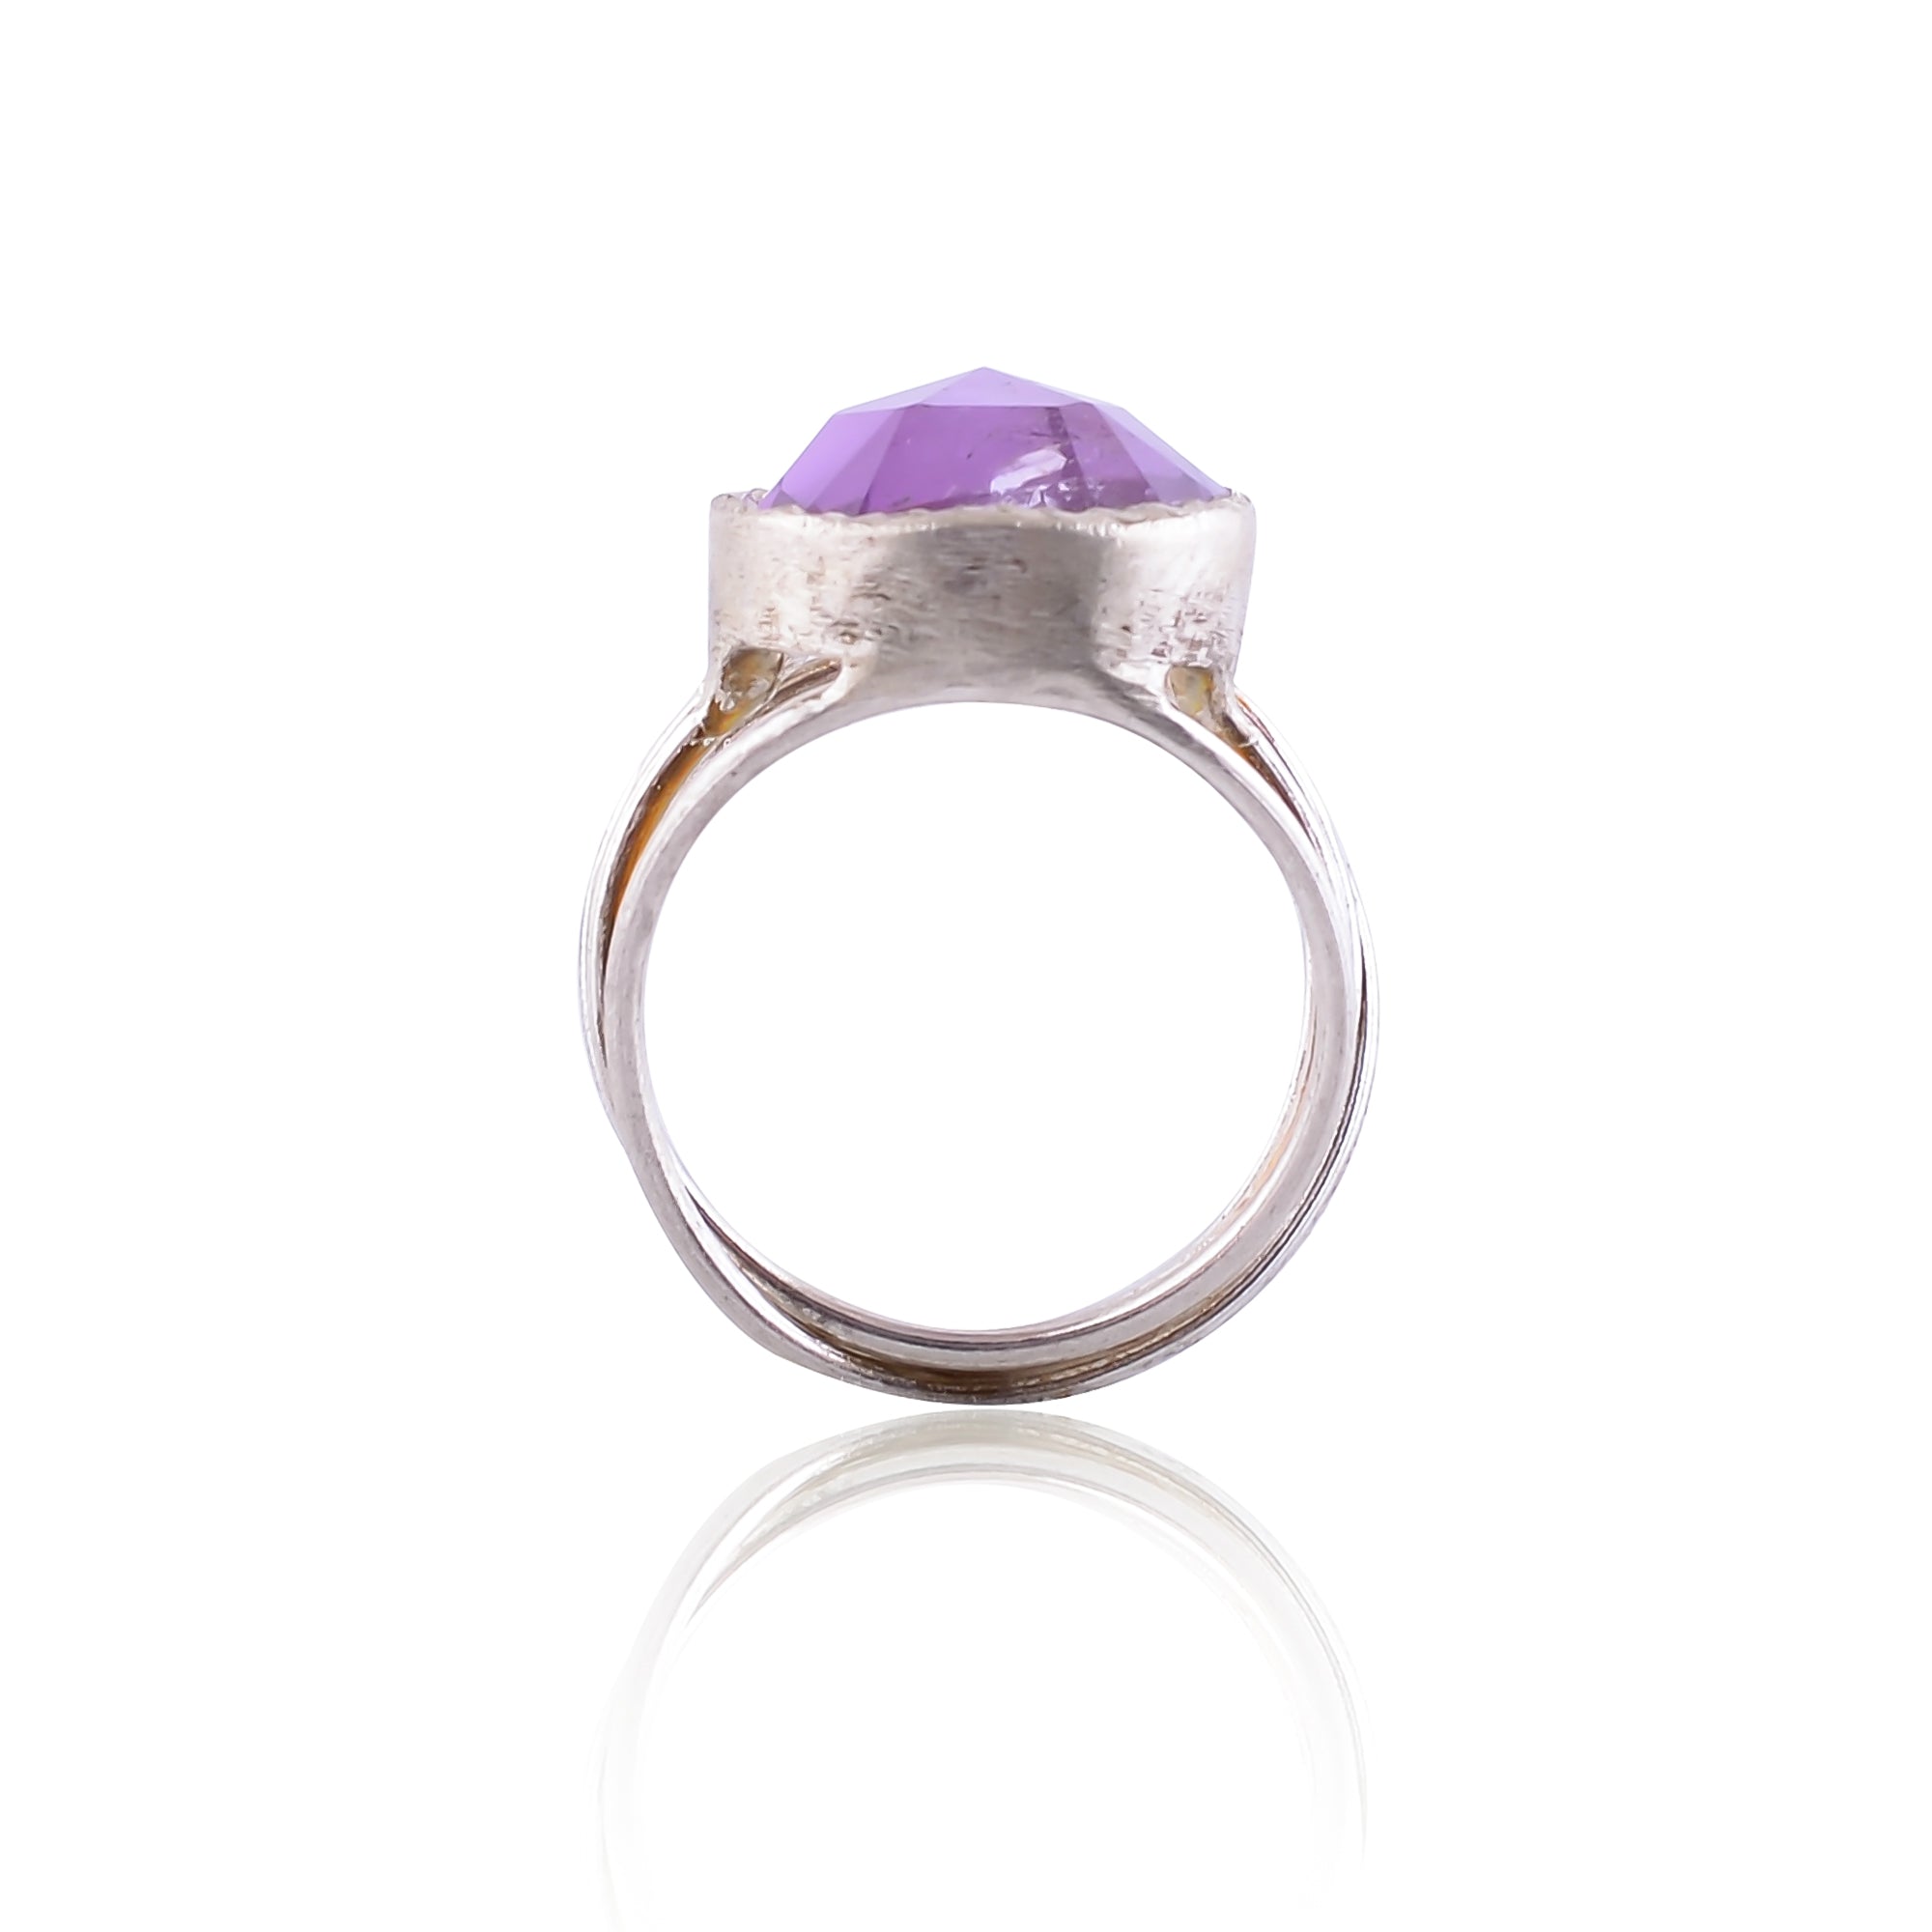 Buy Buy Designer Handmade Silver Amethyst Ring